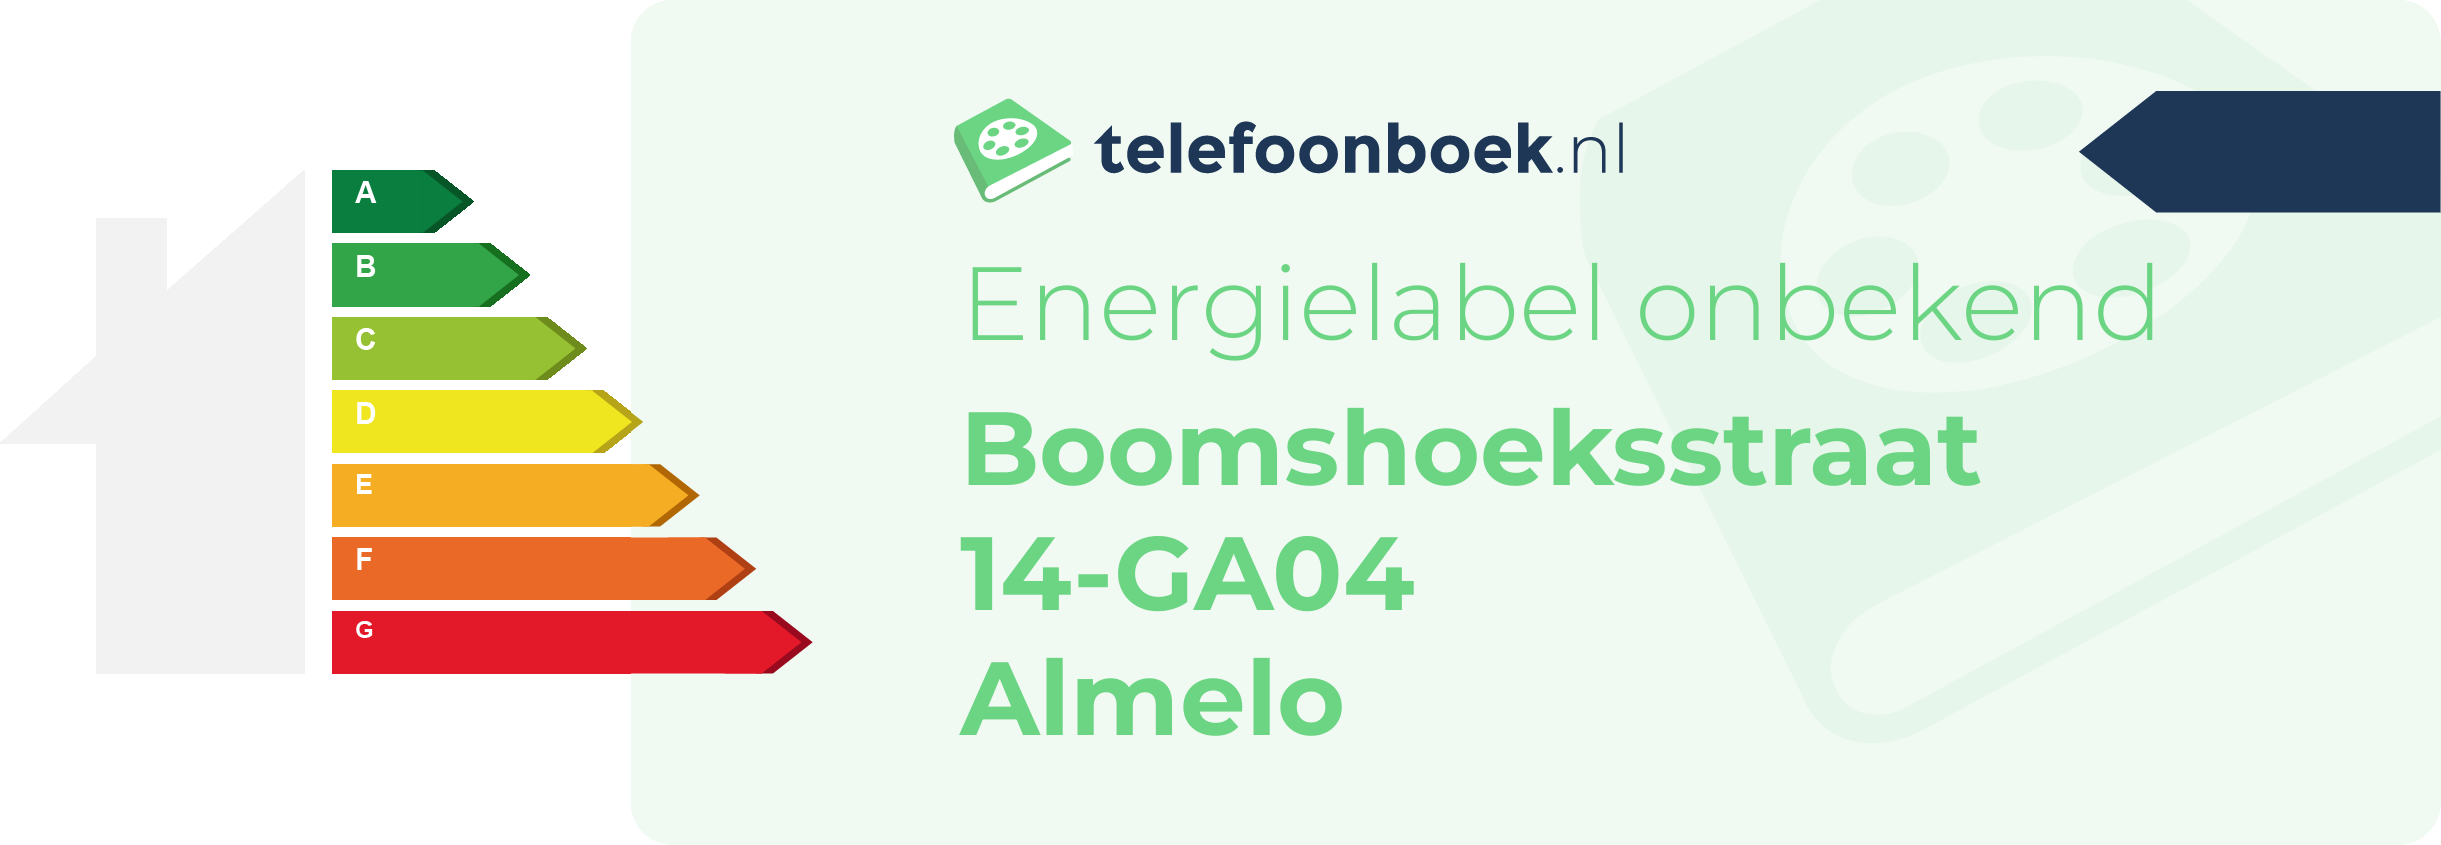 Energielabel Boomshoeksstraat 14-GA04 Almelo